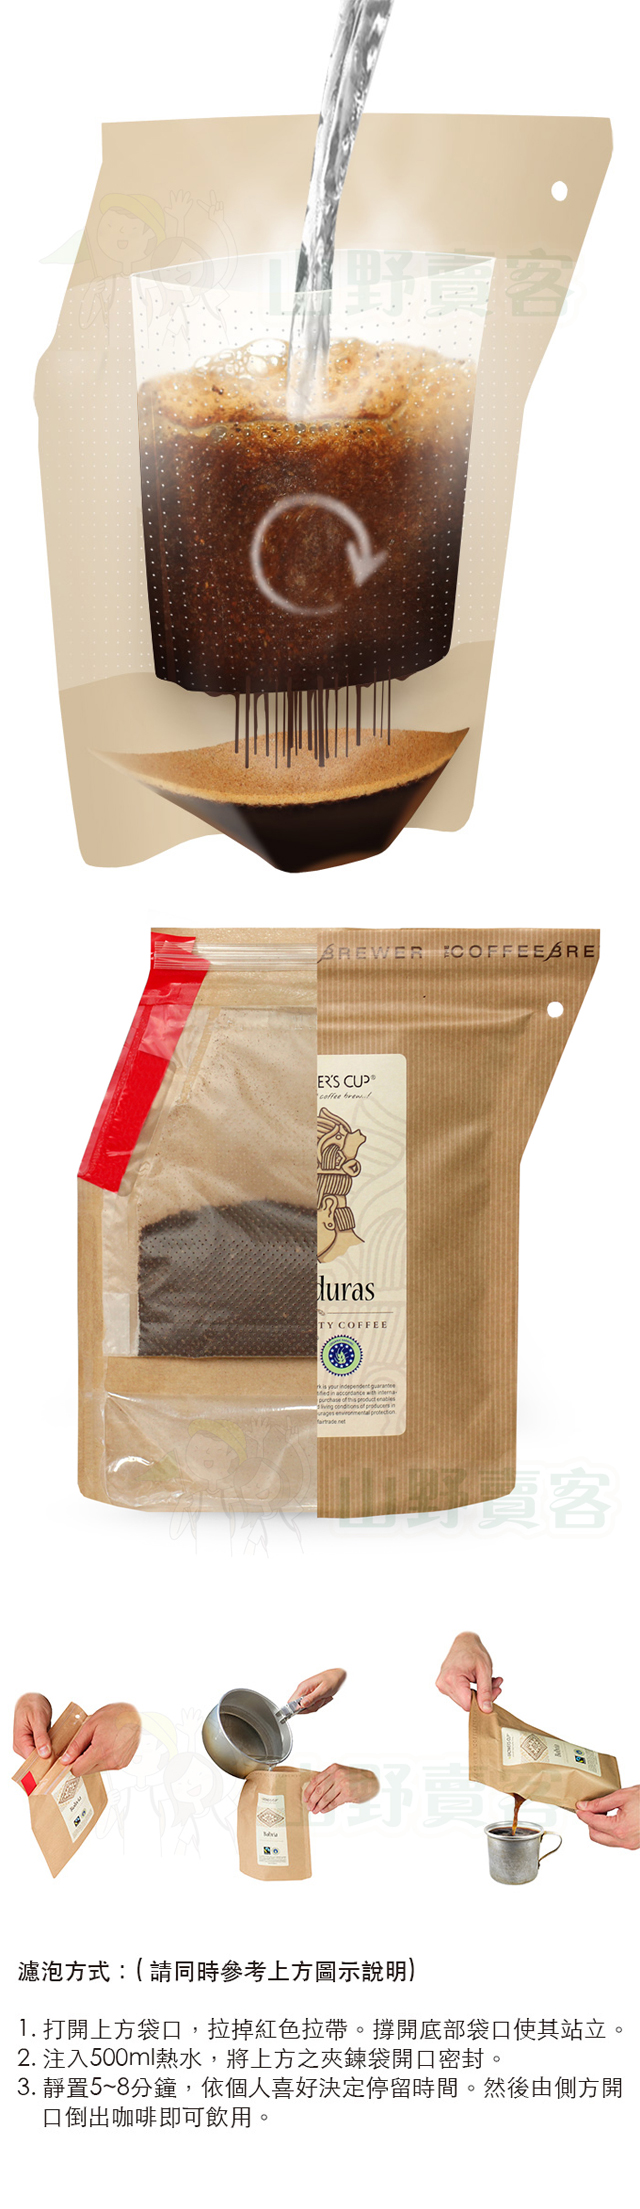 丹麥 Grower’s Cup 頂級有機攜帶式濾泡咖啡-玻利維亞(Bolivia) 研磨咖啡粉 GR01